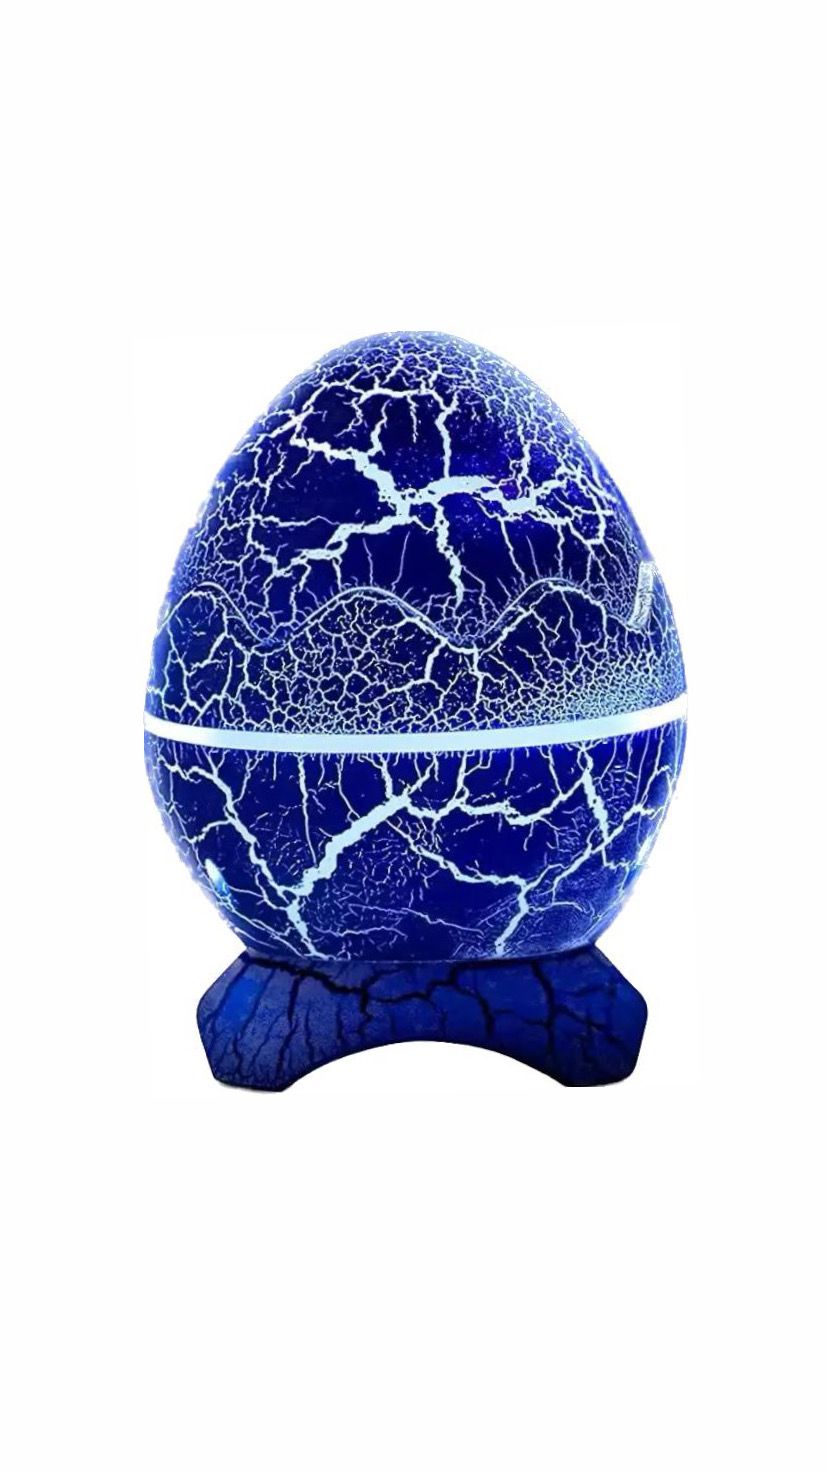 Ночник-проектор яйцо дракона с bluetooth синий 3кн supernowa ночник проектор яйцо дракона с bluetooth фиолетовый 3кн supernowa